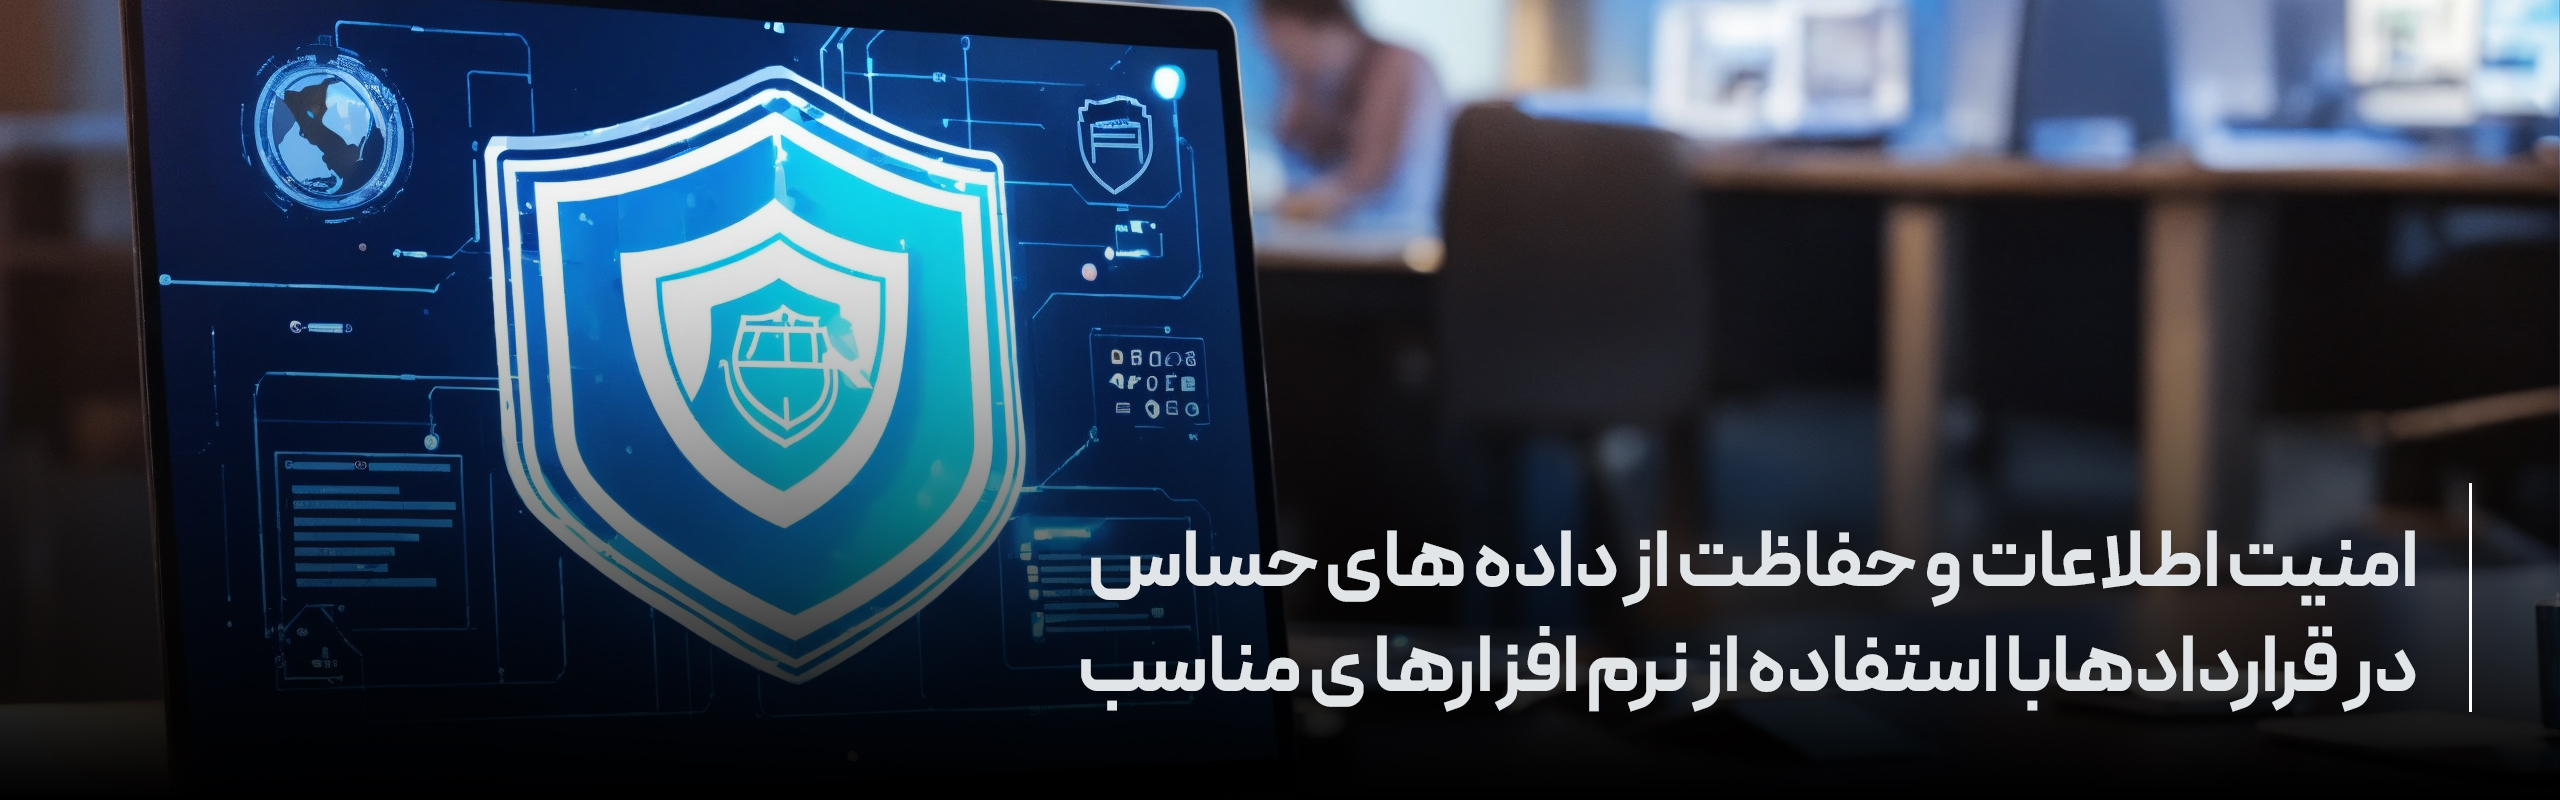 امنیت اطلاعات و حفاظت از داده های حساس در قراردادها